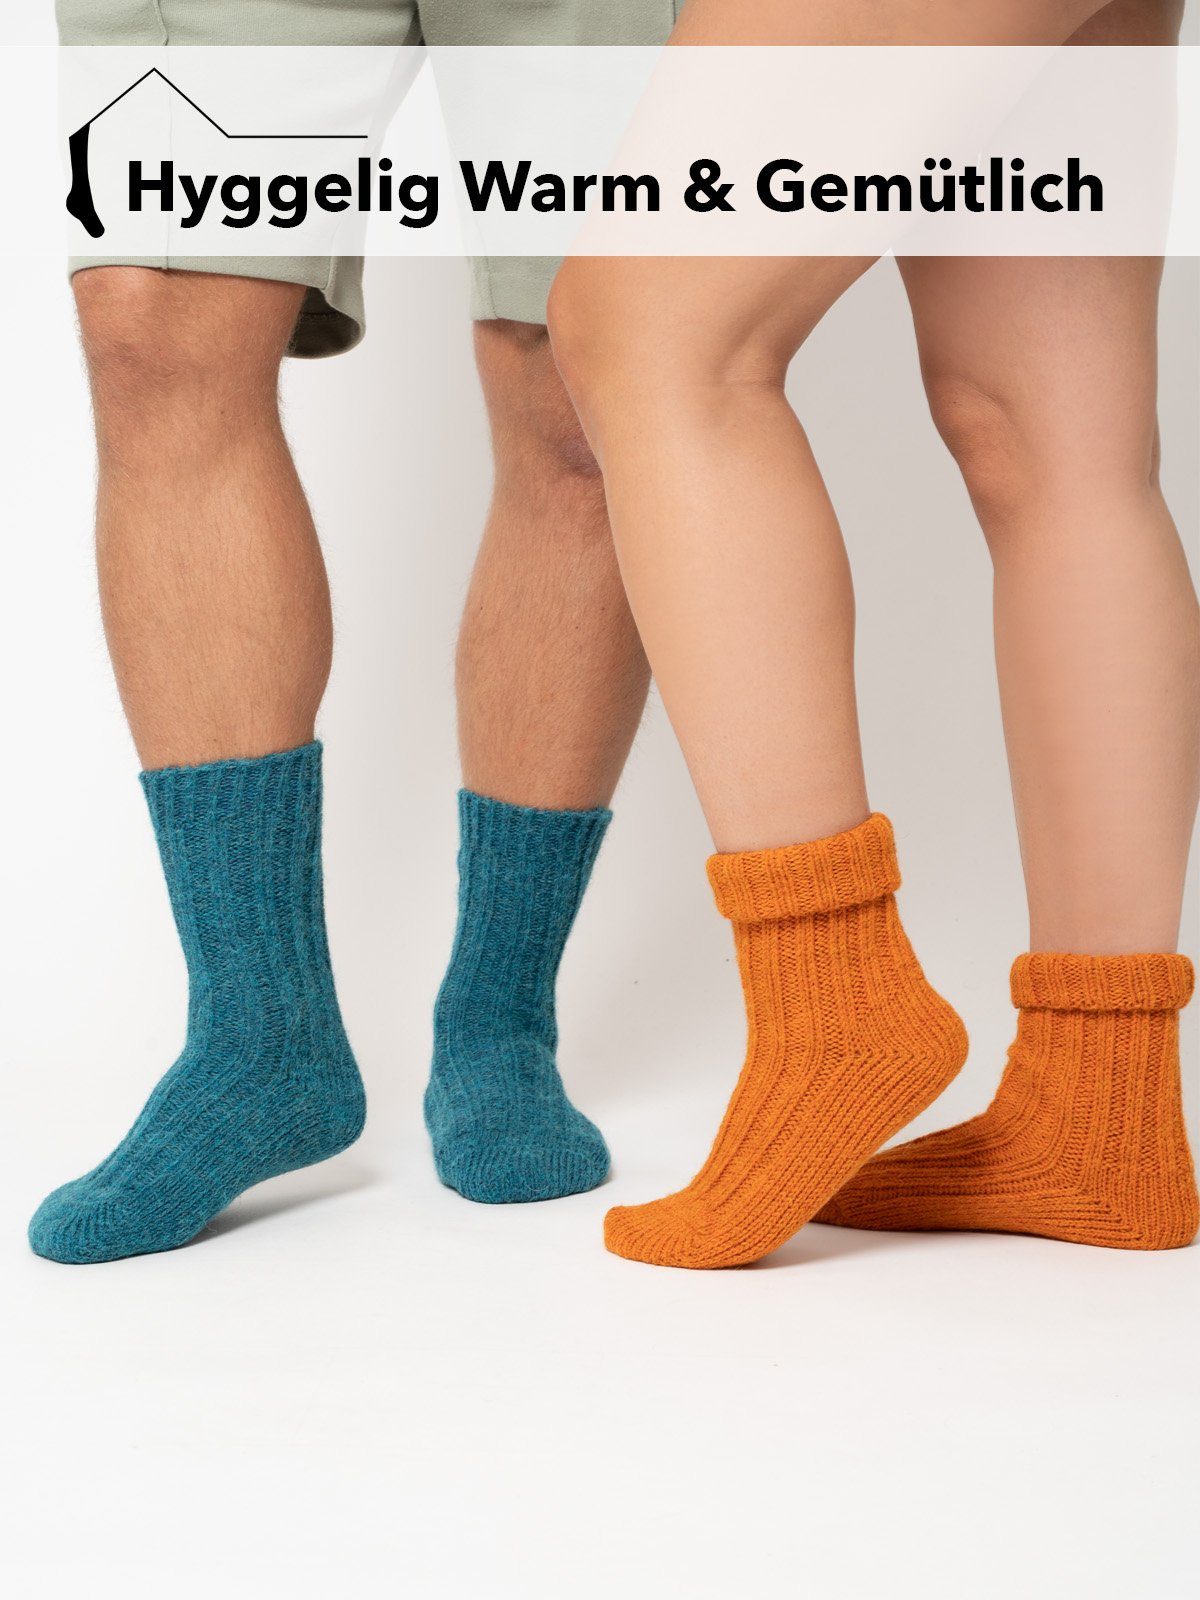 HomeOfSocks Socken Rot Socken Wollanteil Strapazierfähige und Alpakawolle mit mit Alpakawolle und 40% Umschlag Wolle Bunte Socken warme und mit